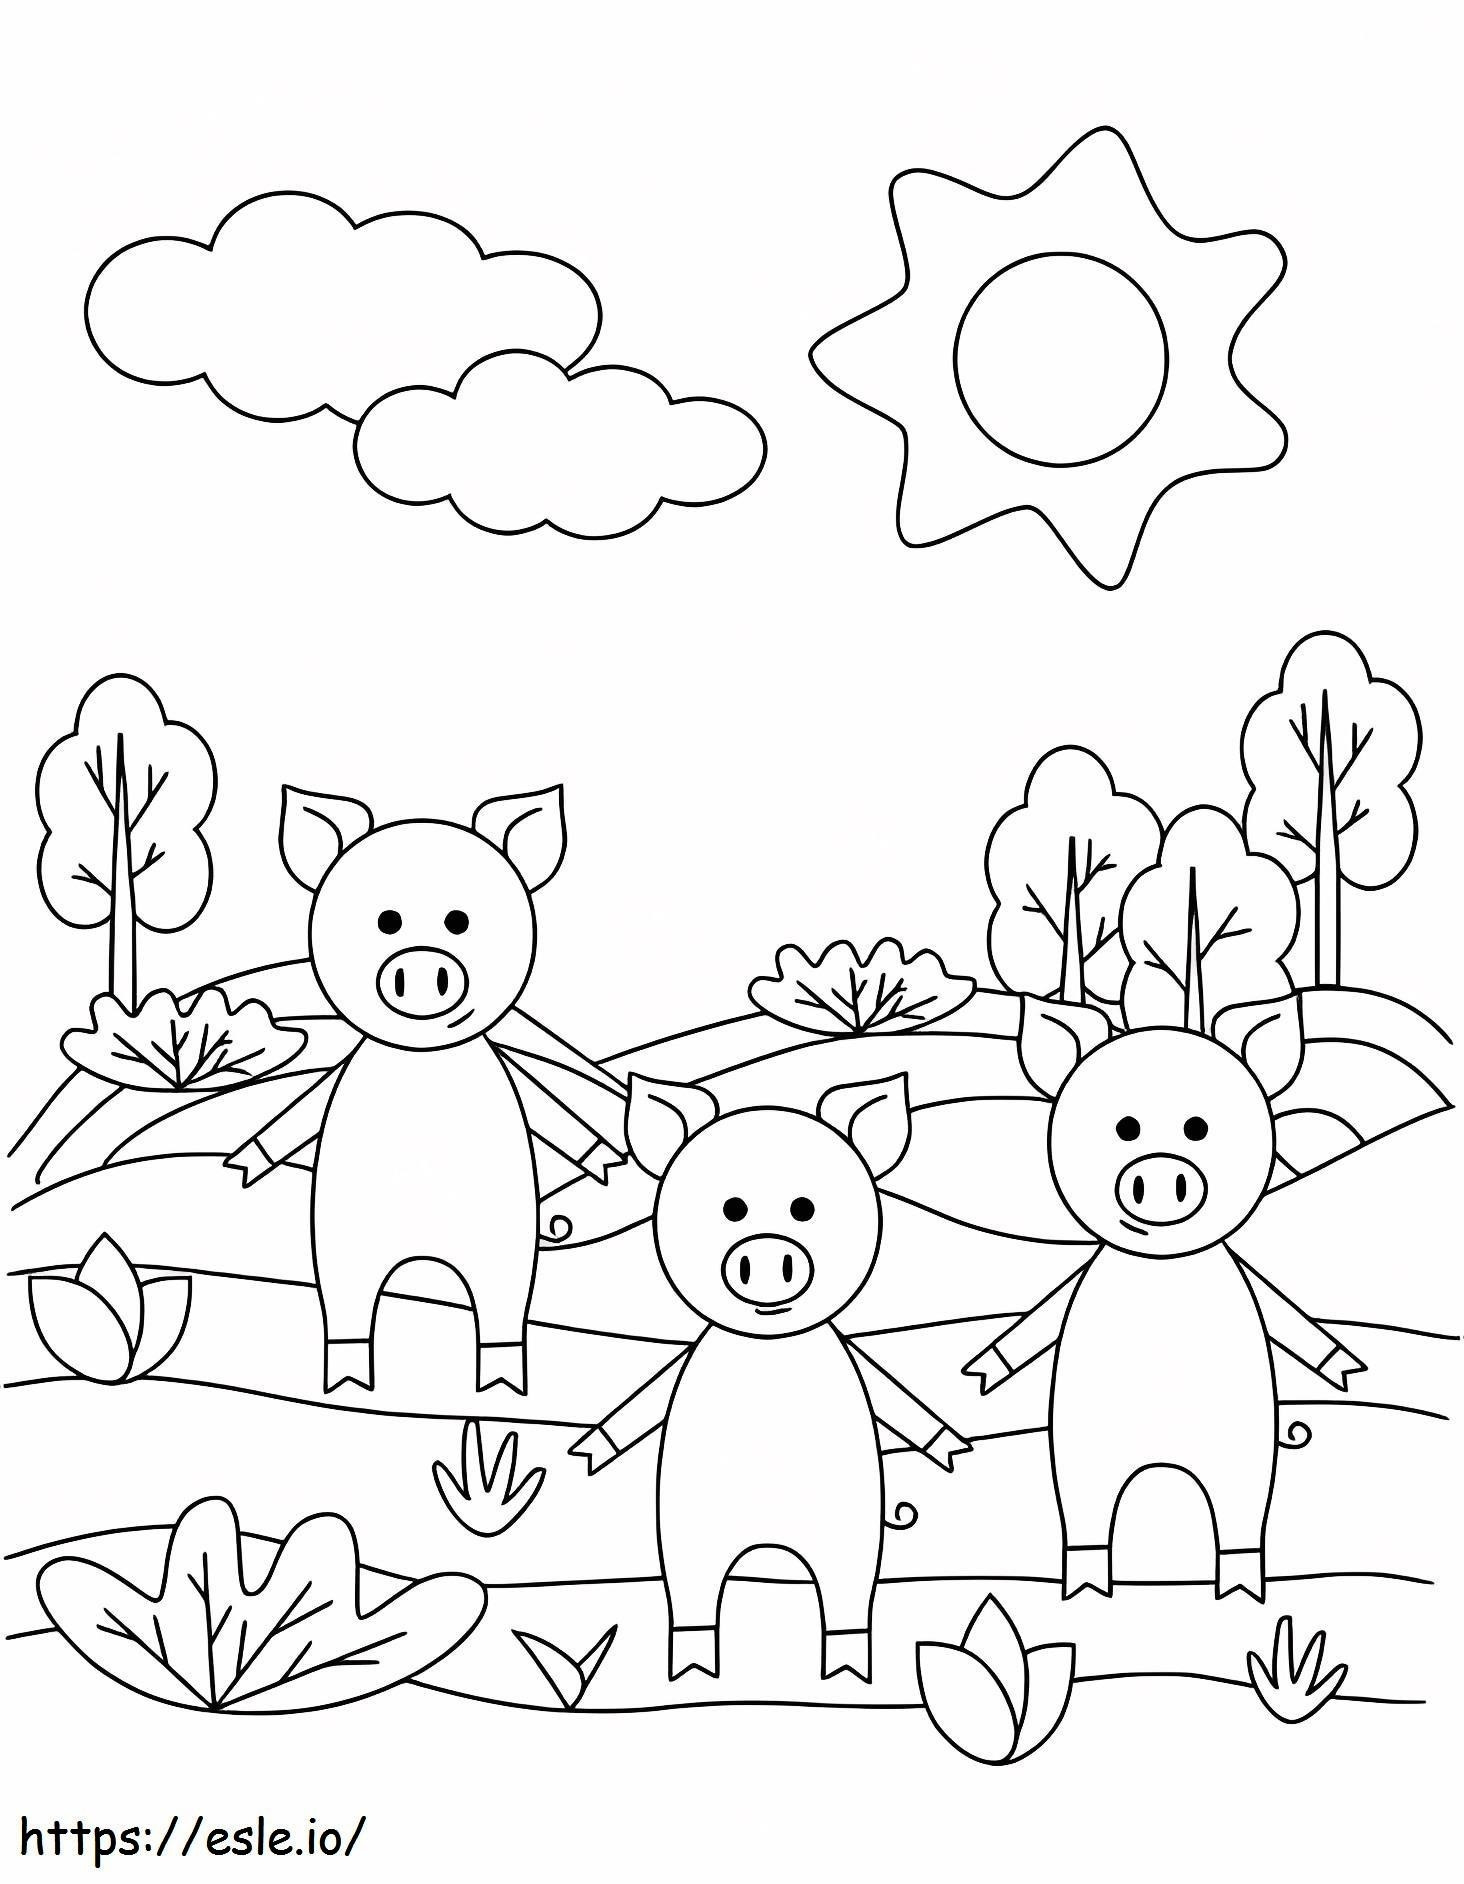 Three Kawaii Pigs coloring page